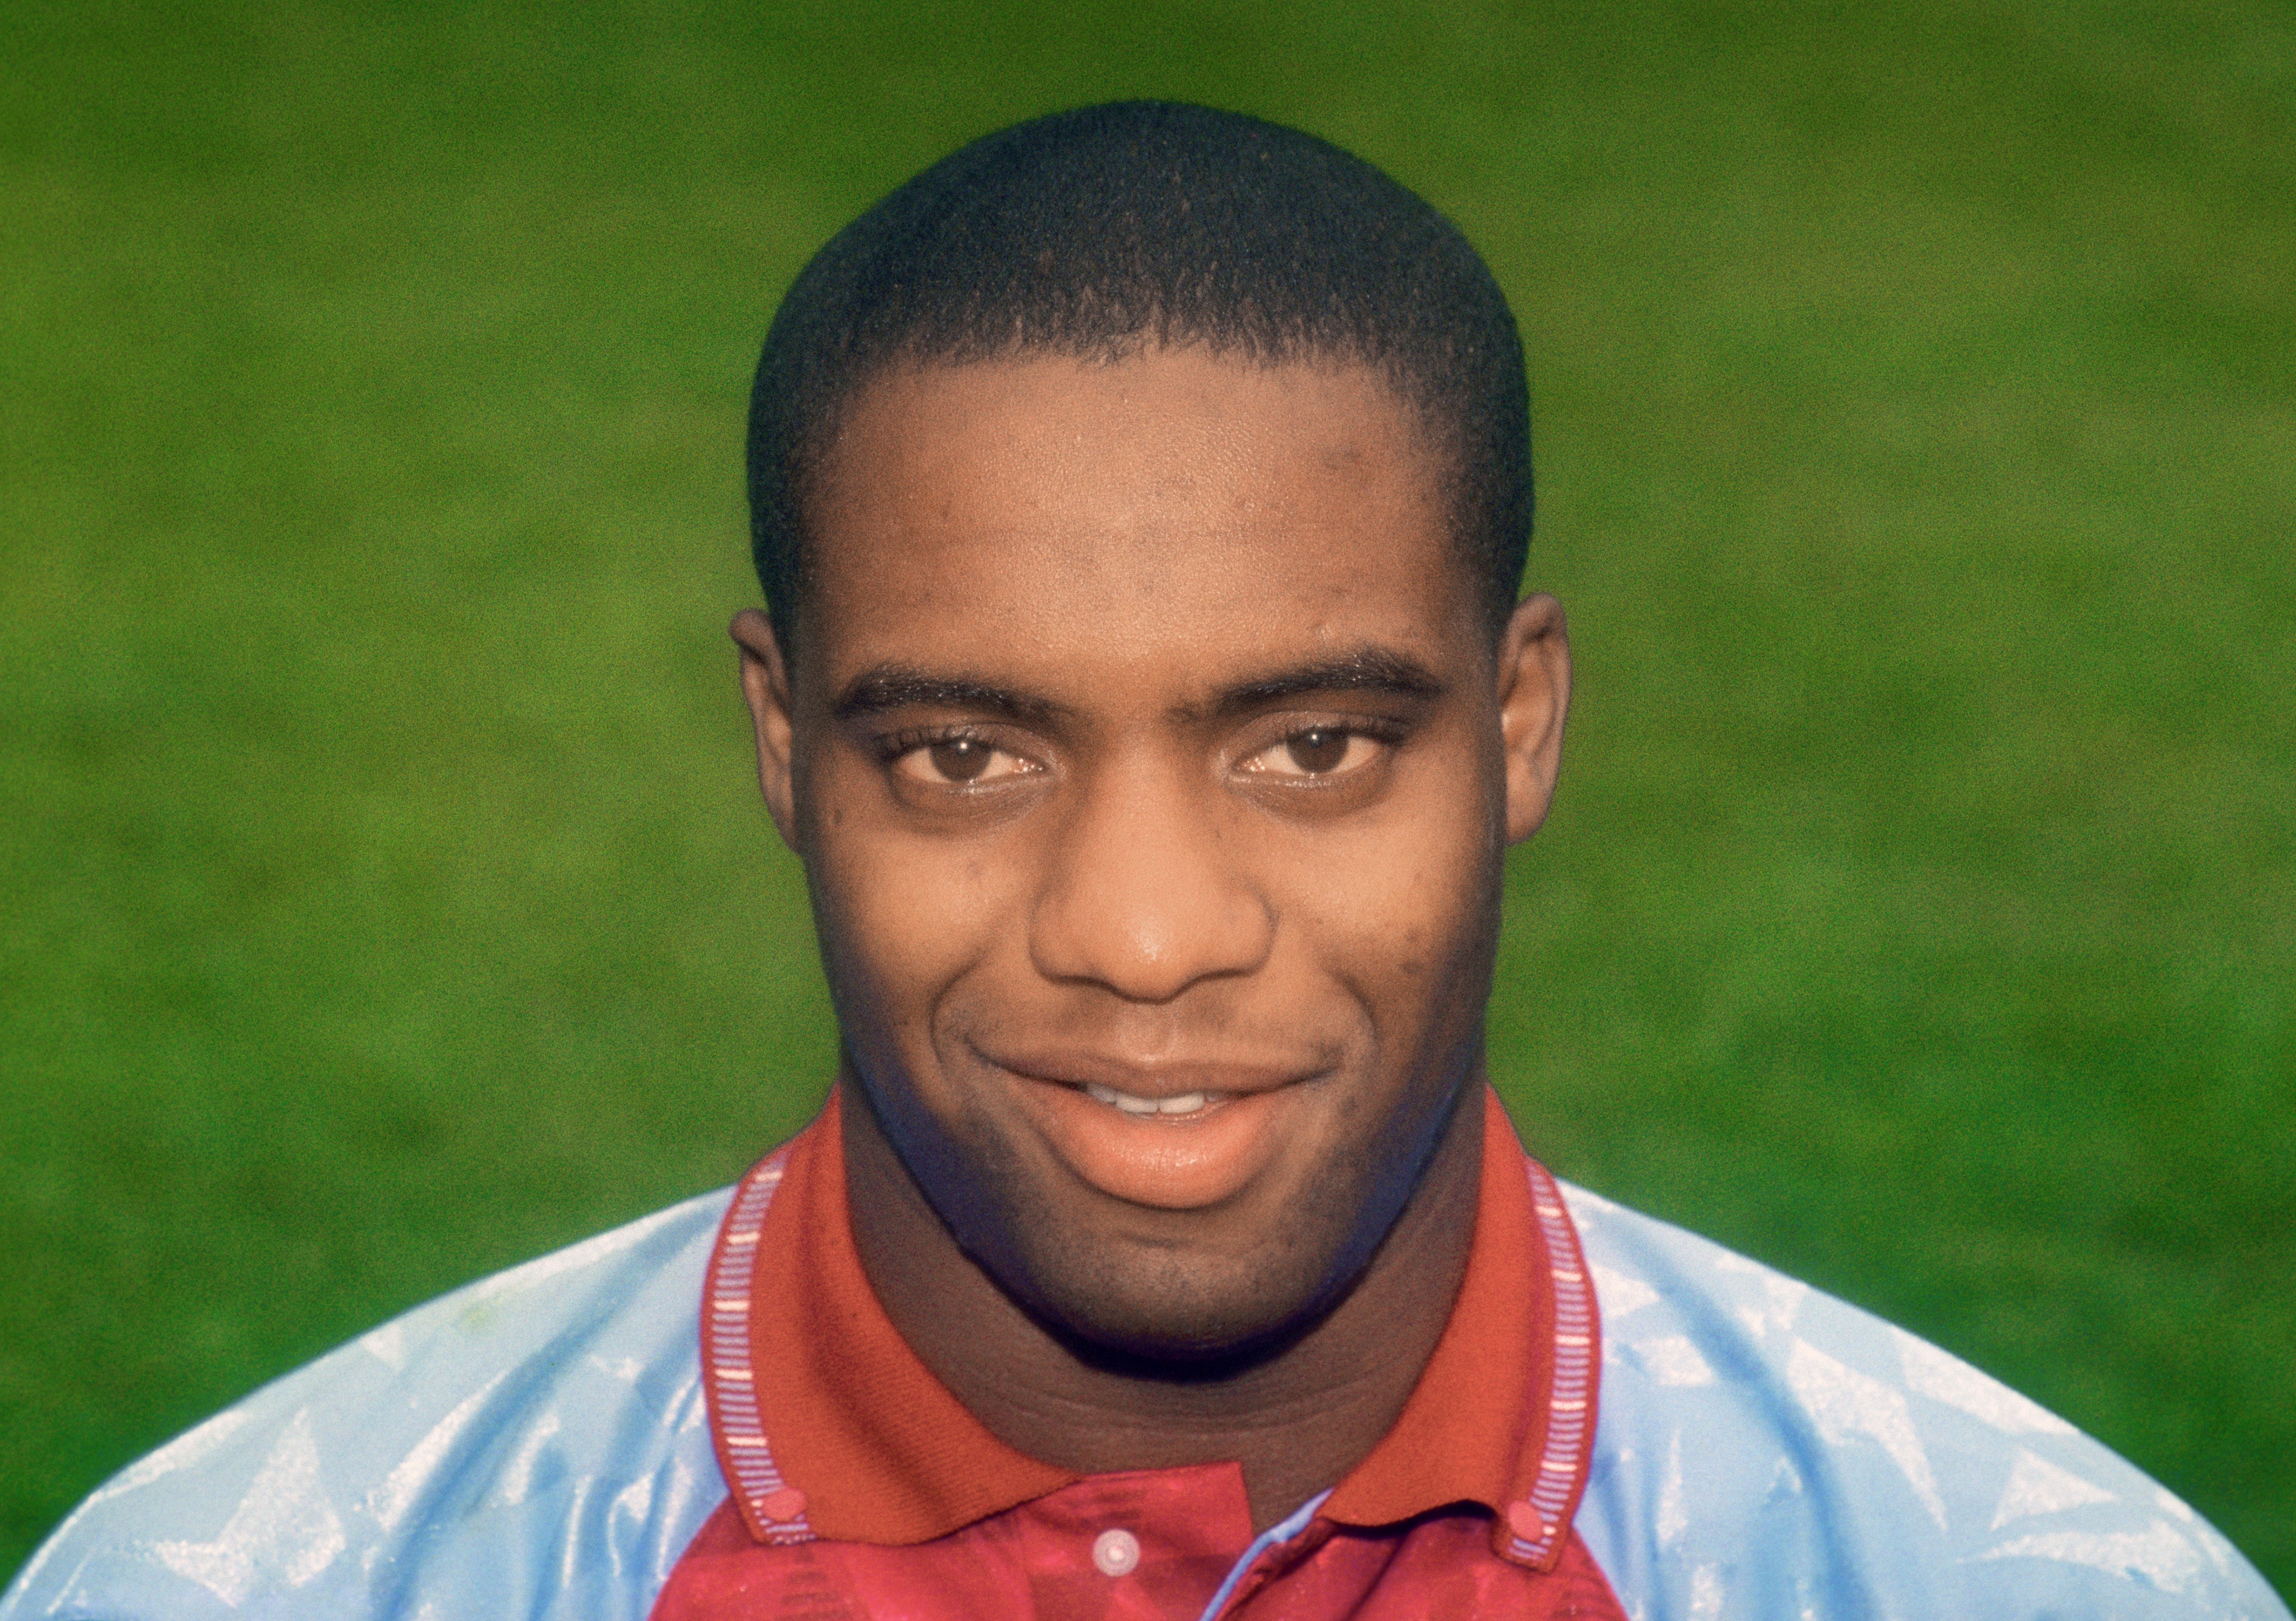 Dalian Atkinson during his time as an Aston Villa player